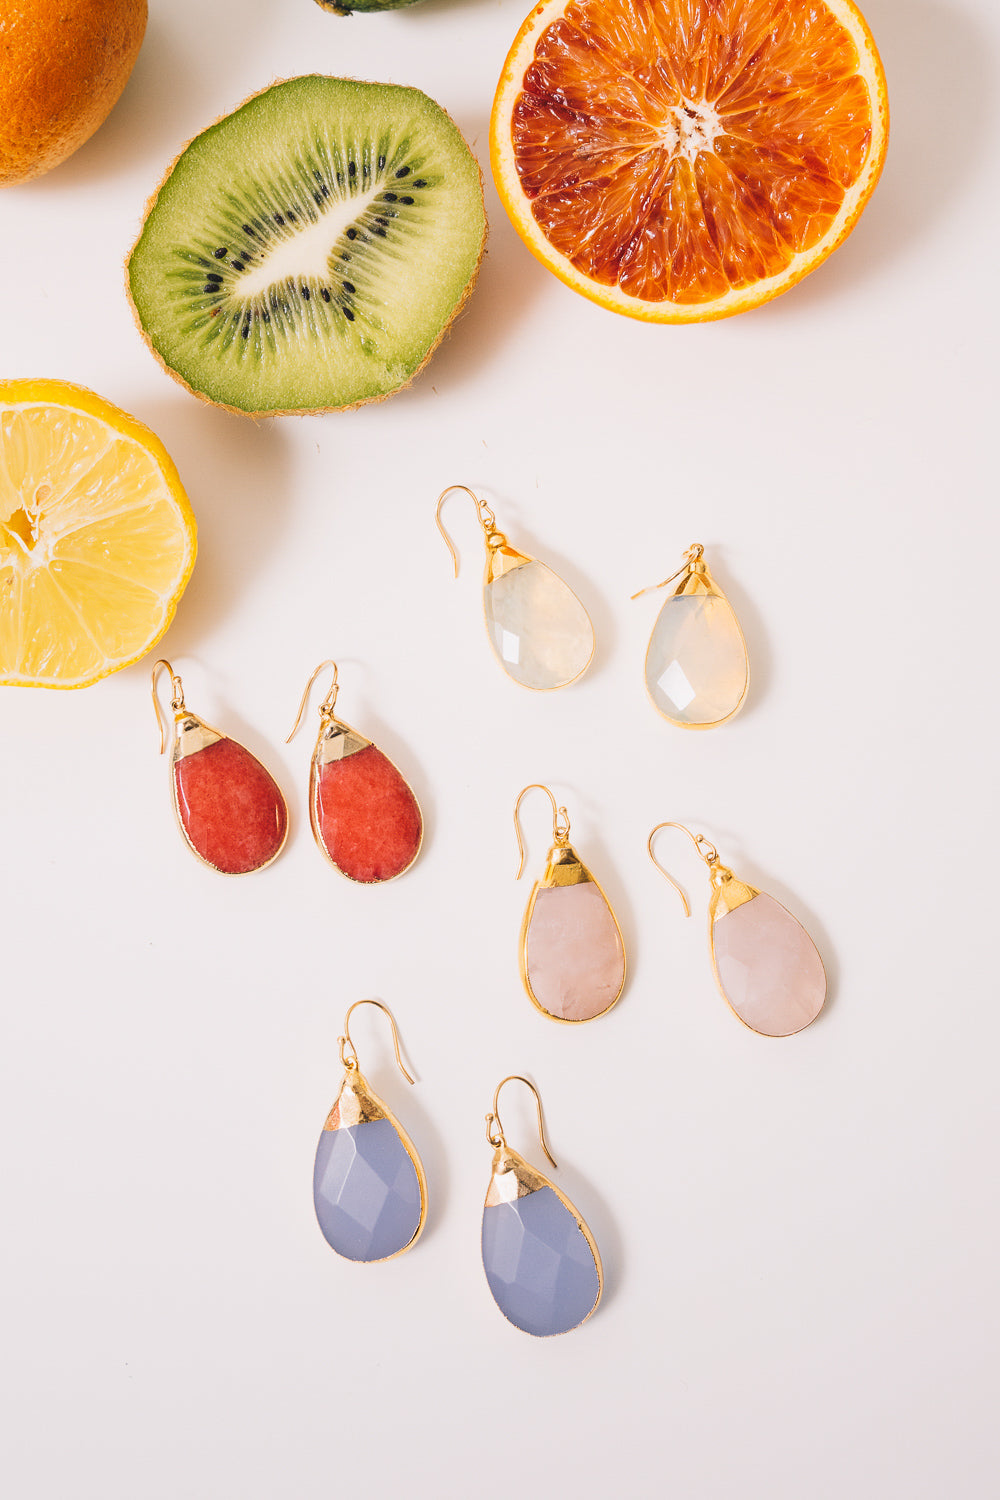 gemstone teardrop earrings pastel colors